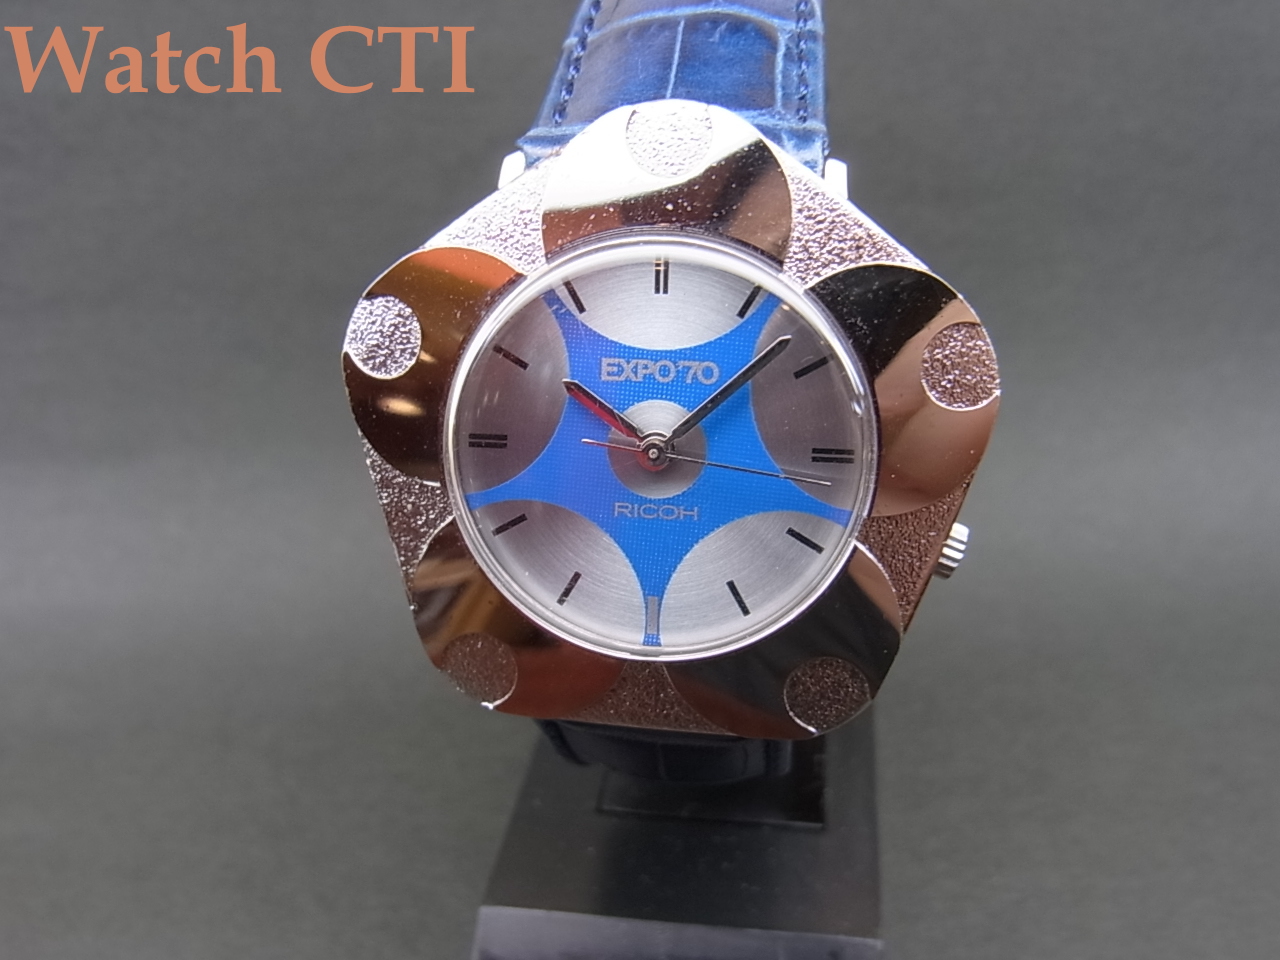 価格変更よろしくお願い致しますRICOH EXPO'70 腕時計 岡本太郎デザイン